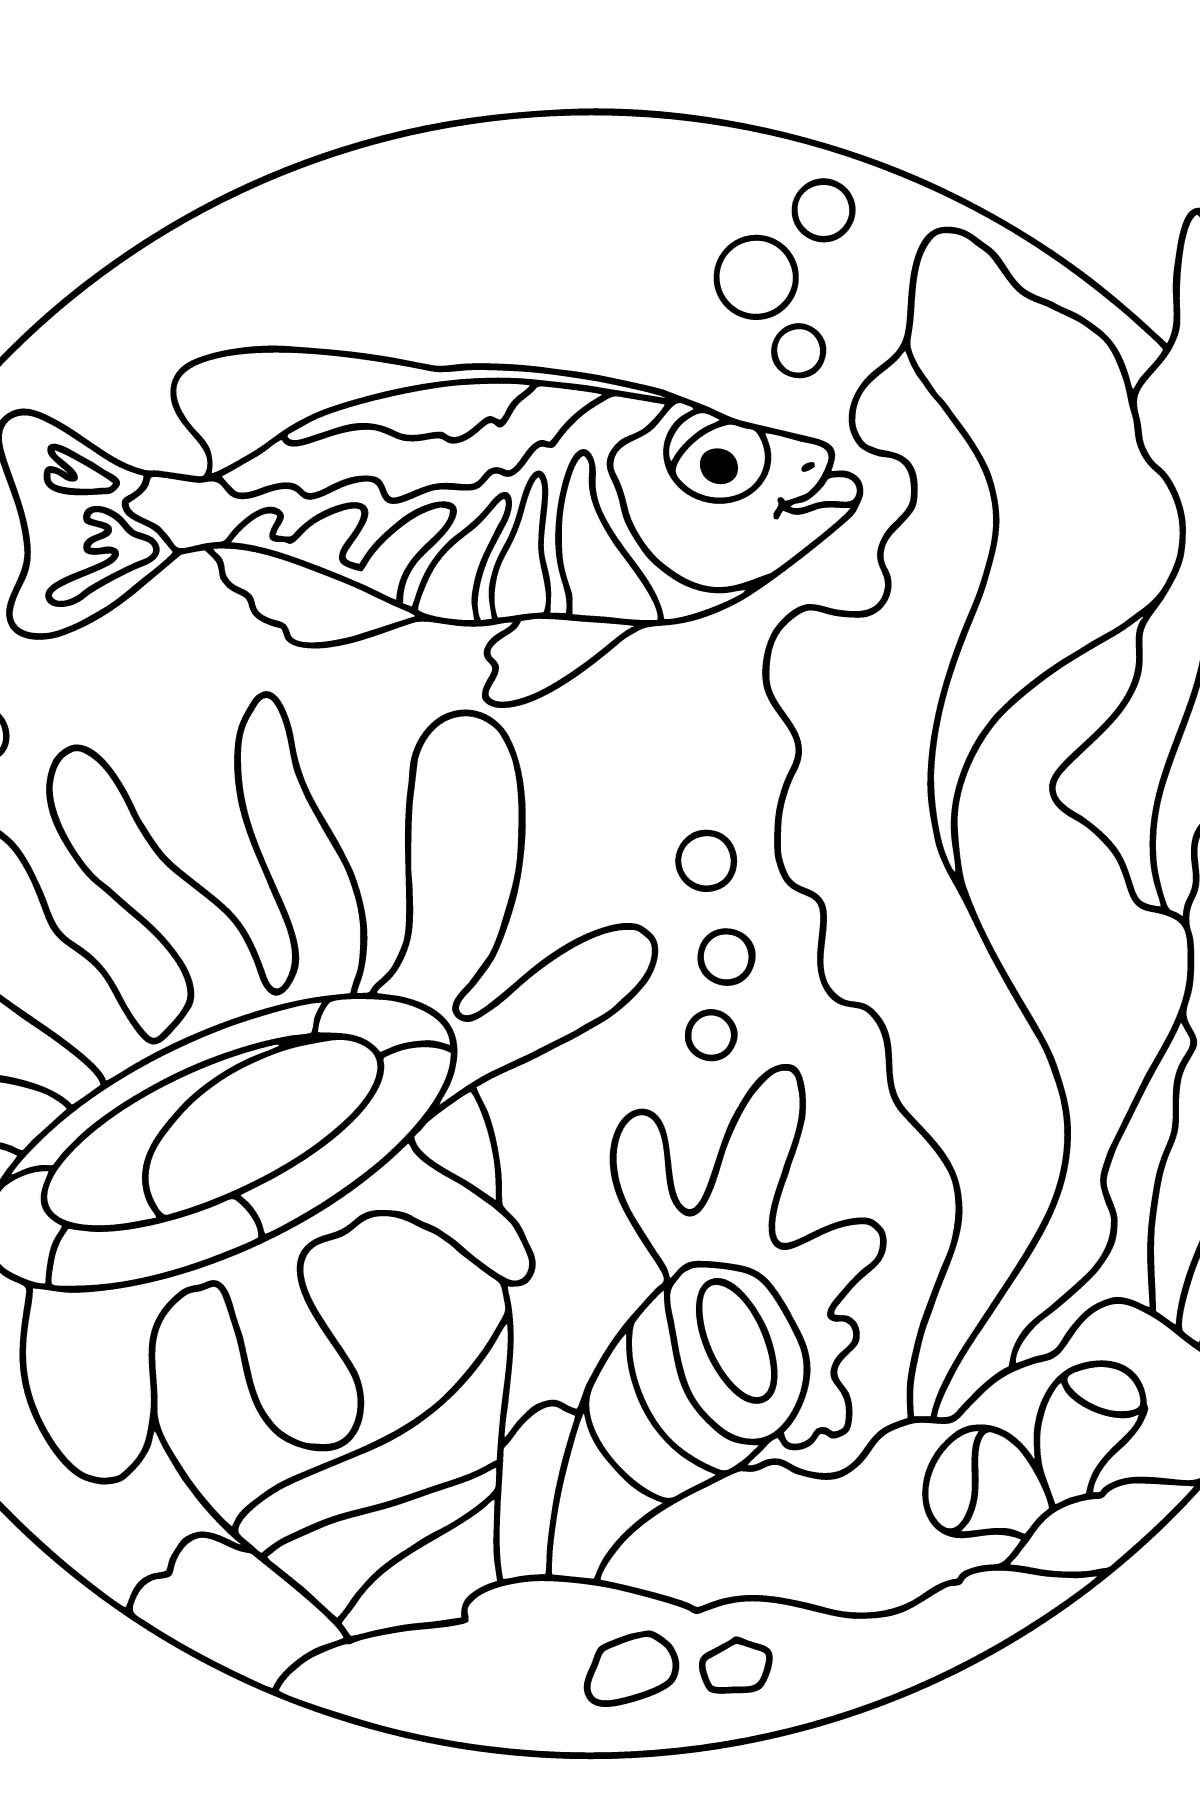 Tegning til fargelegging fisk (vanskelig) - Tegninger til fargelegging for barn